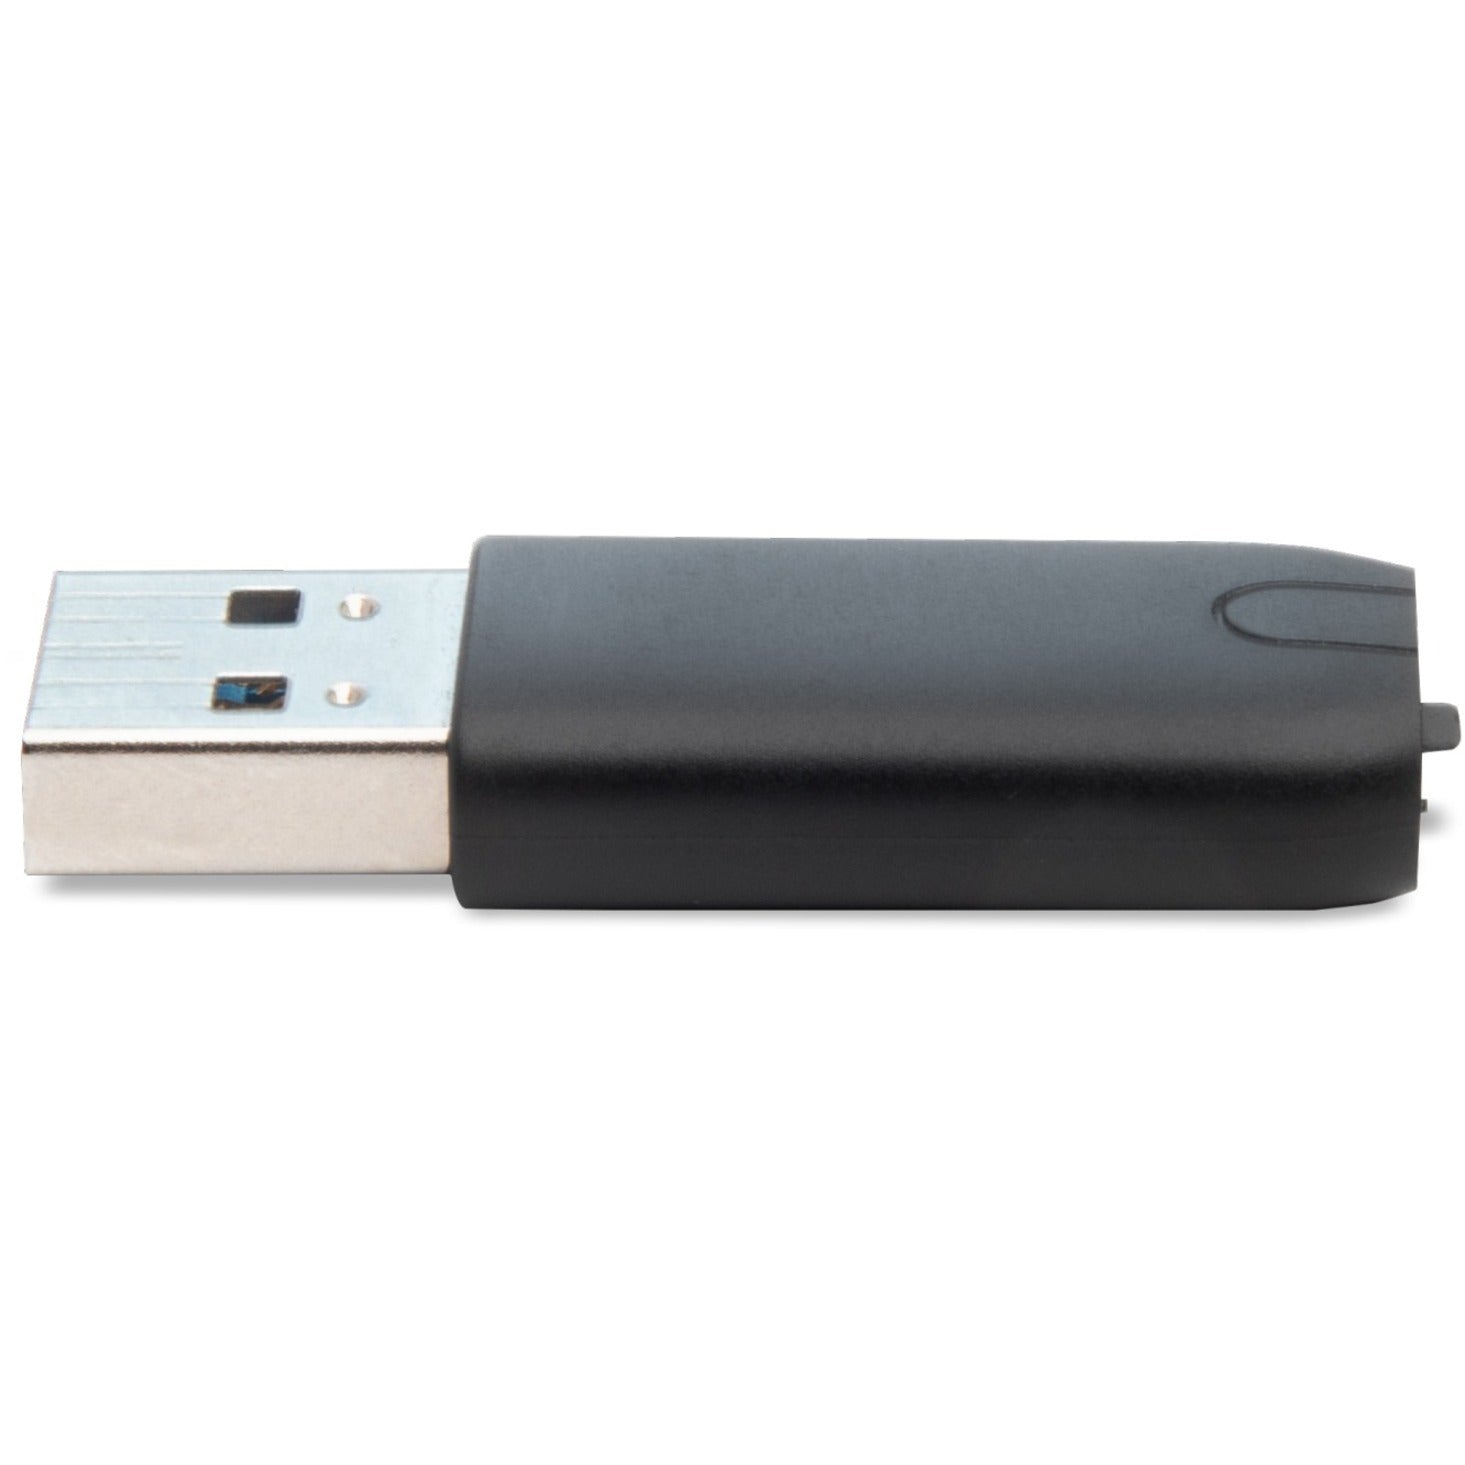 محول USB-C إلى USB-A الضروري، محول نقل البيانات اسم العلامة التجارية: Crucial CTUSBCFUSBAMAD